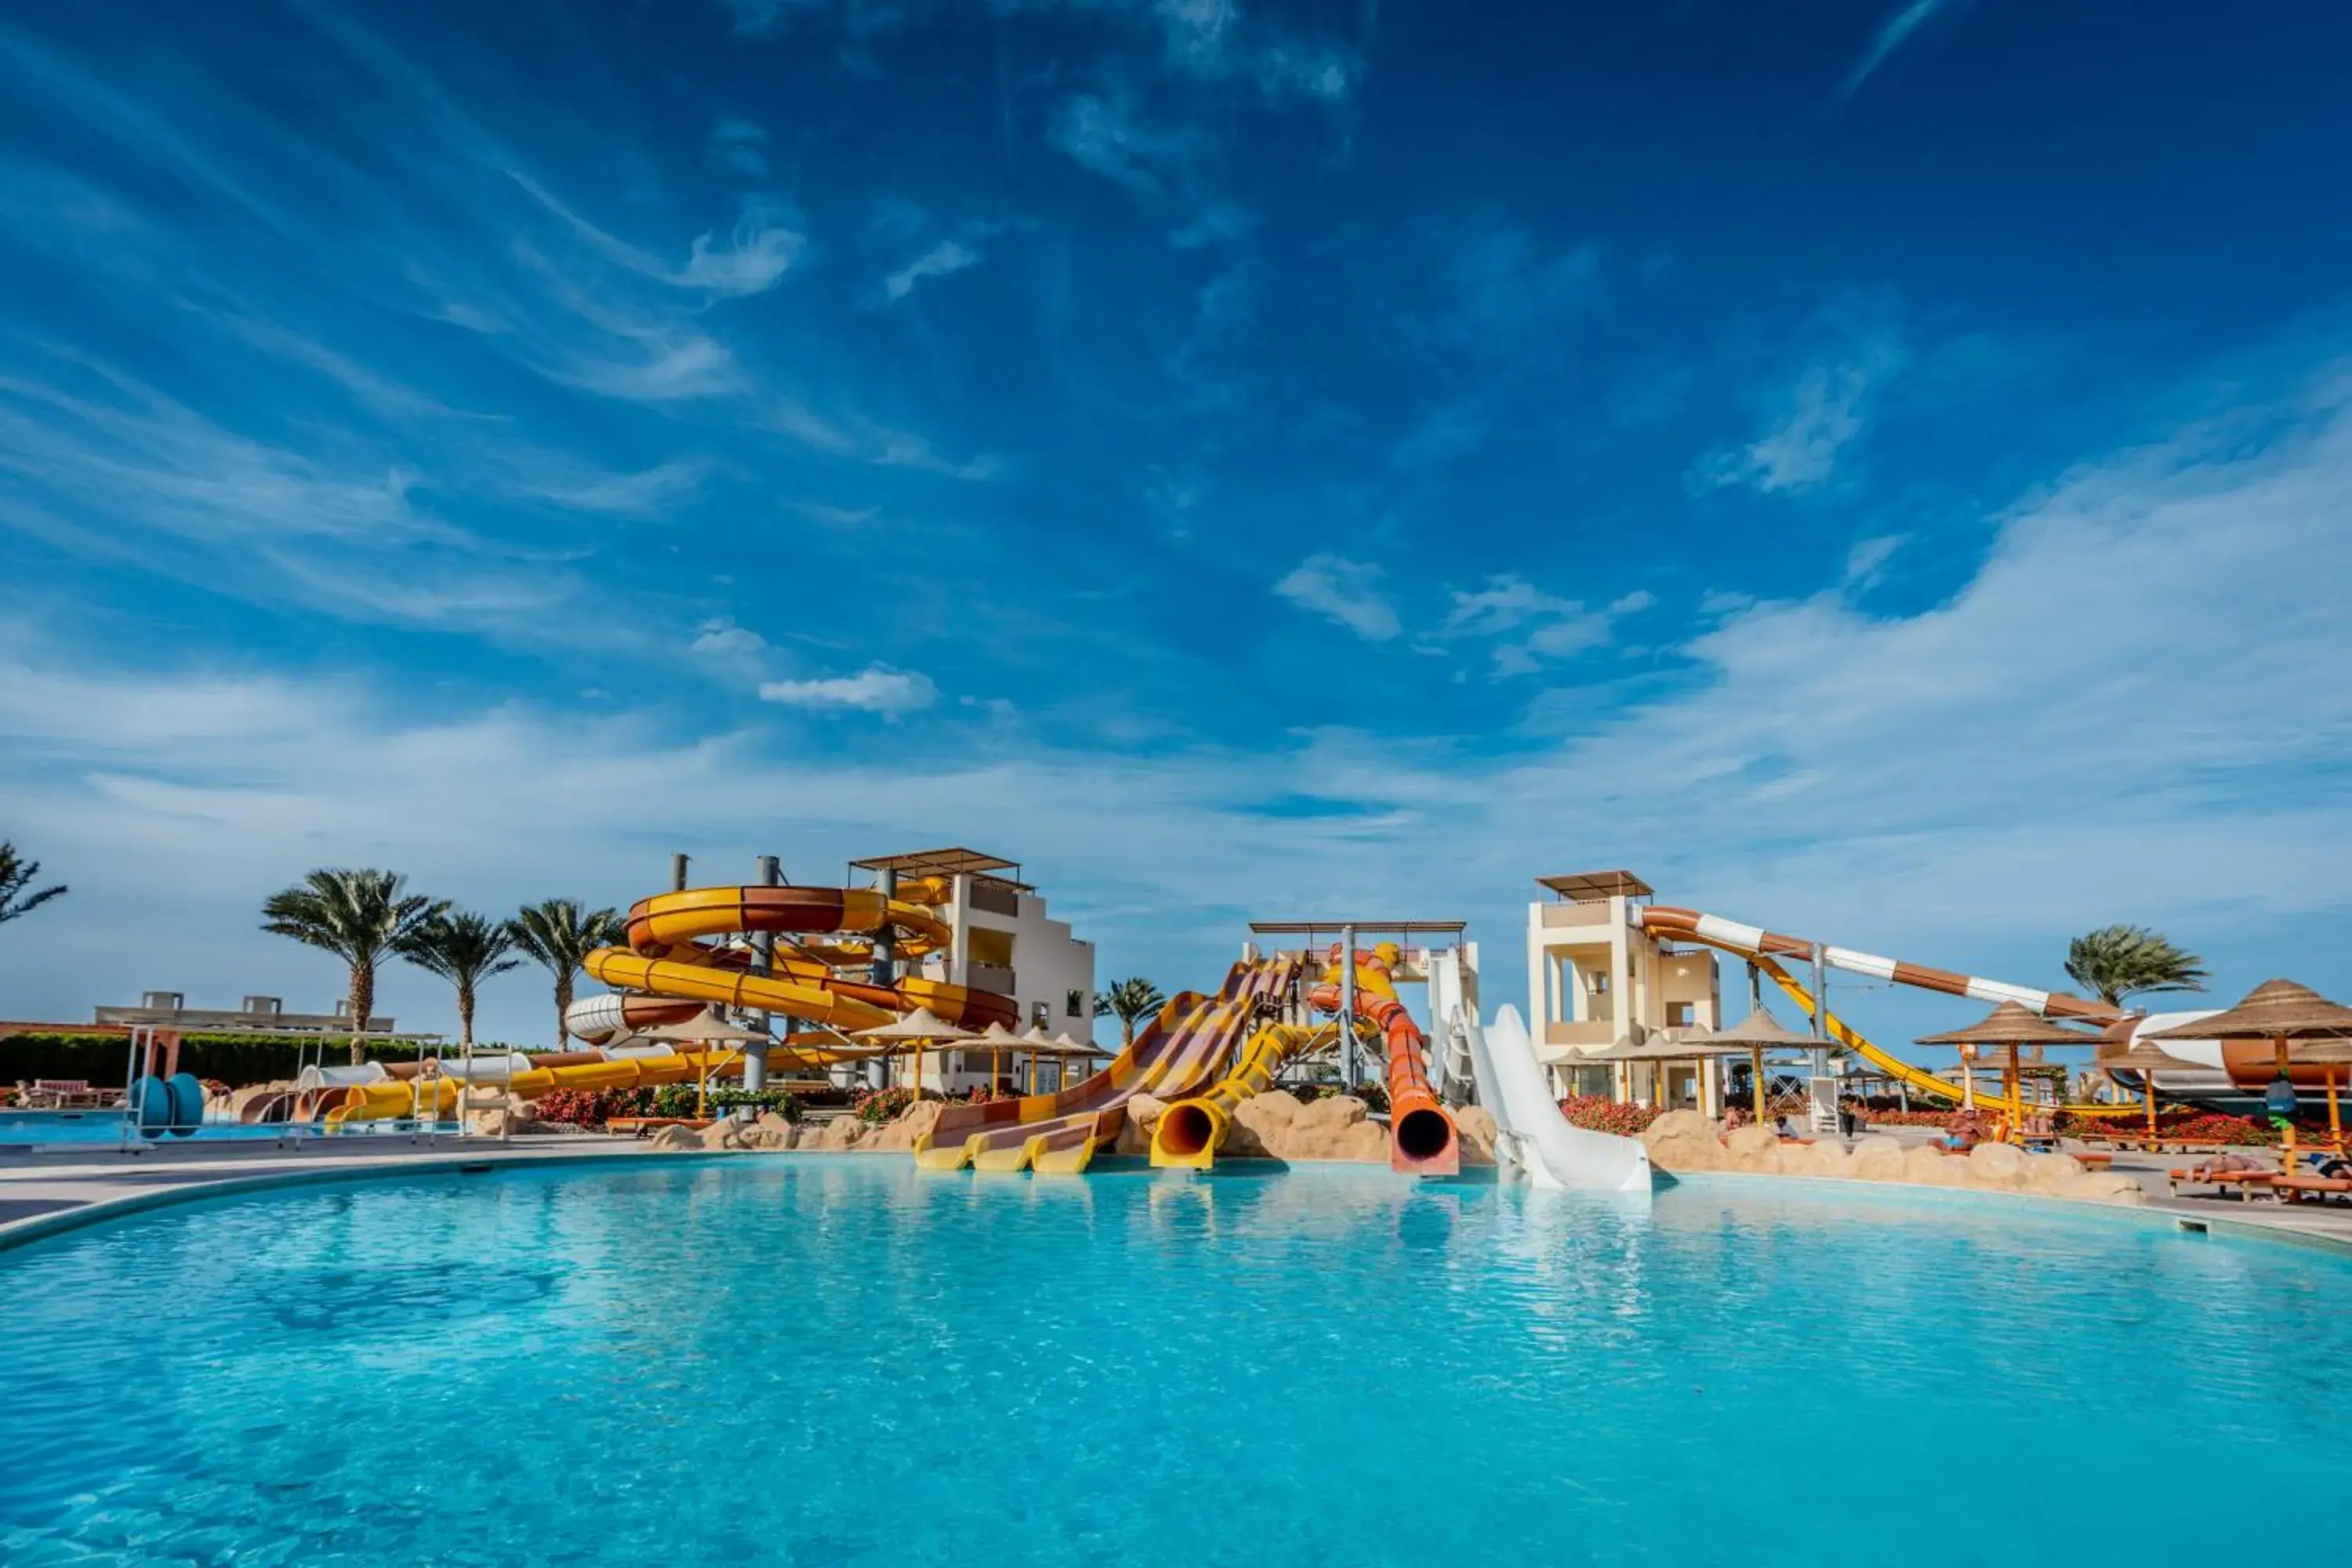 Aqua park, Swimming Pool in El Karma Beach Resort & Aqua Park - Hurghada